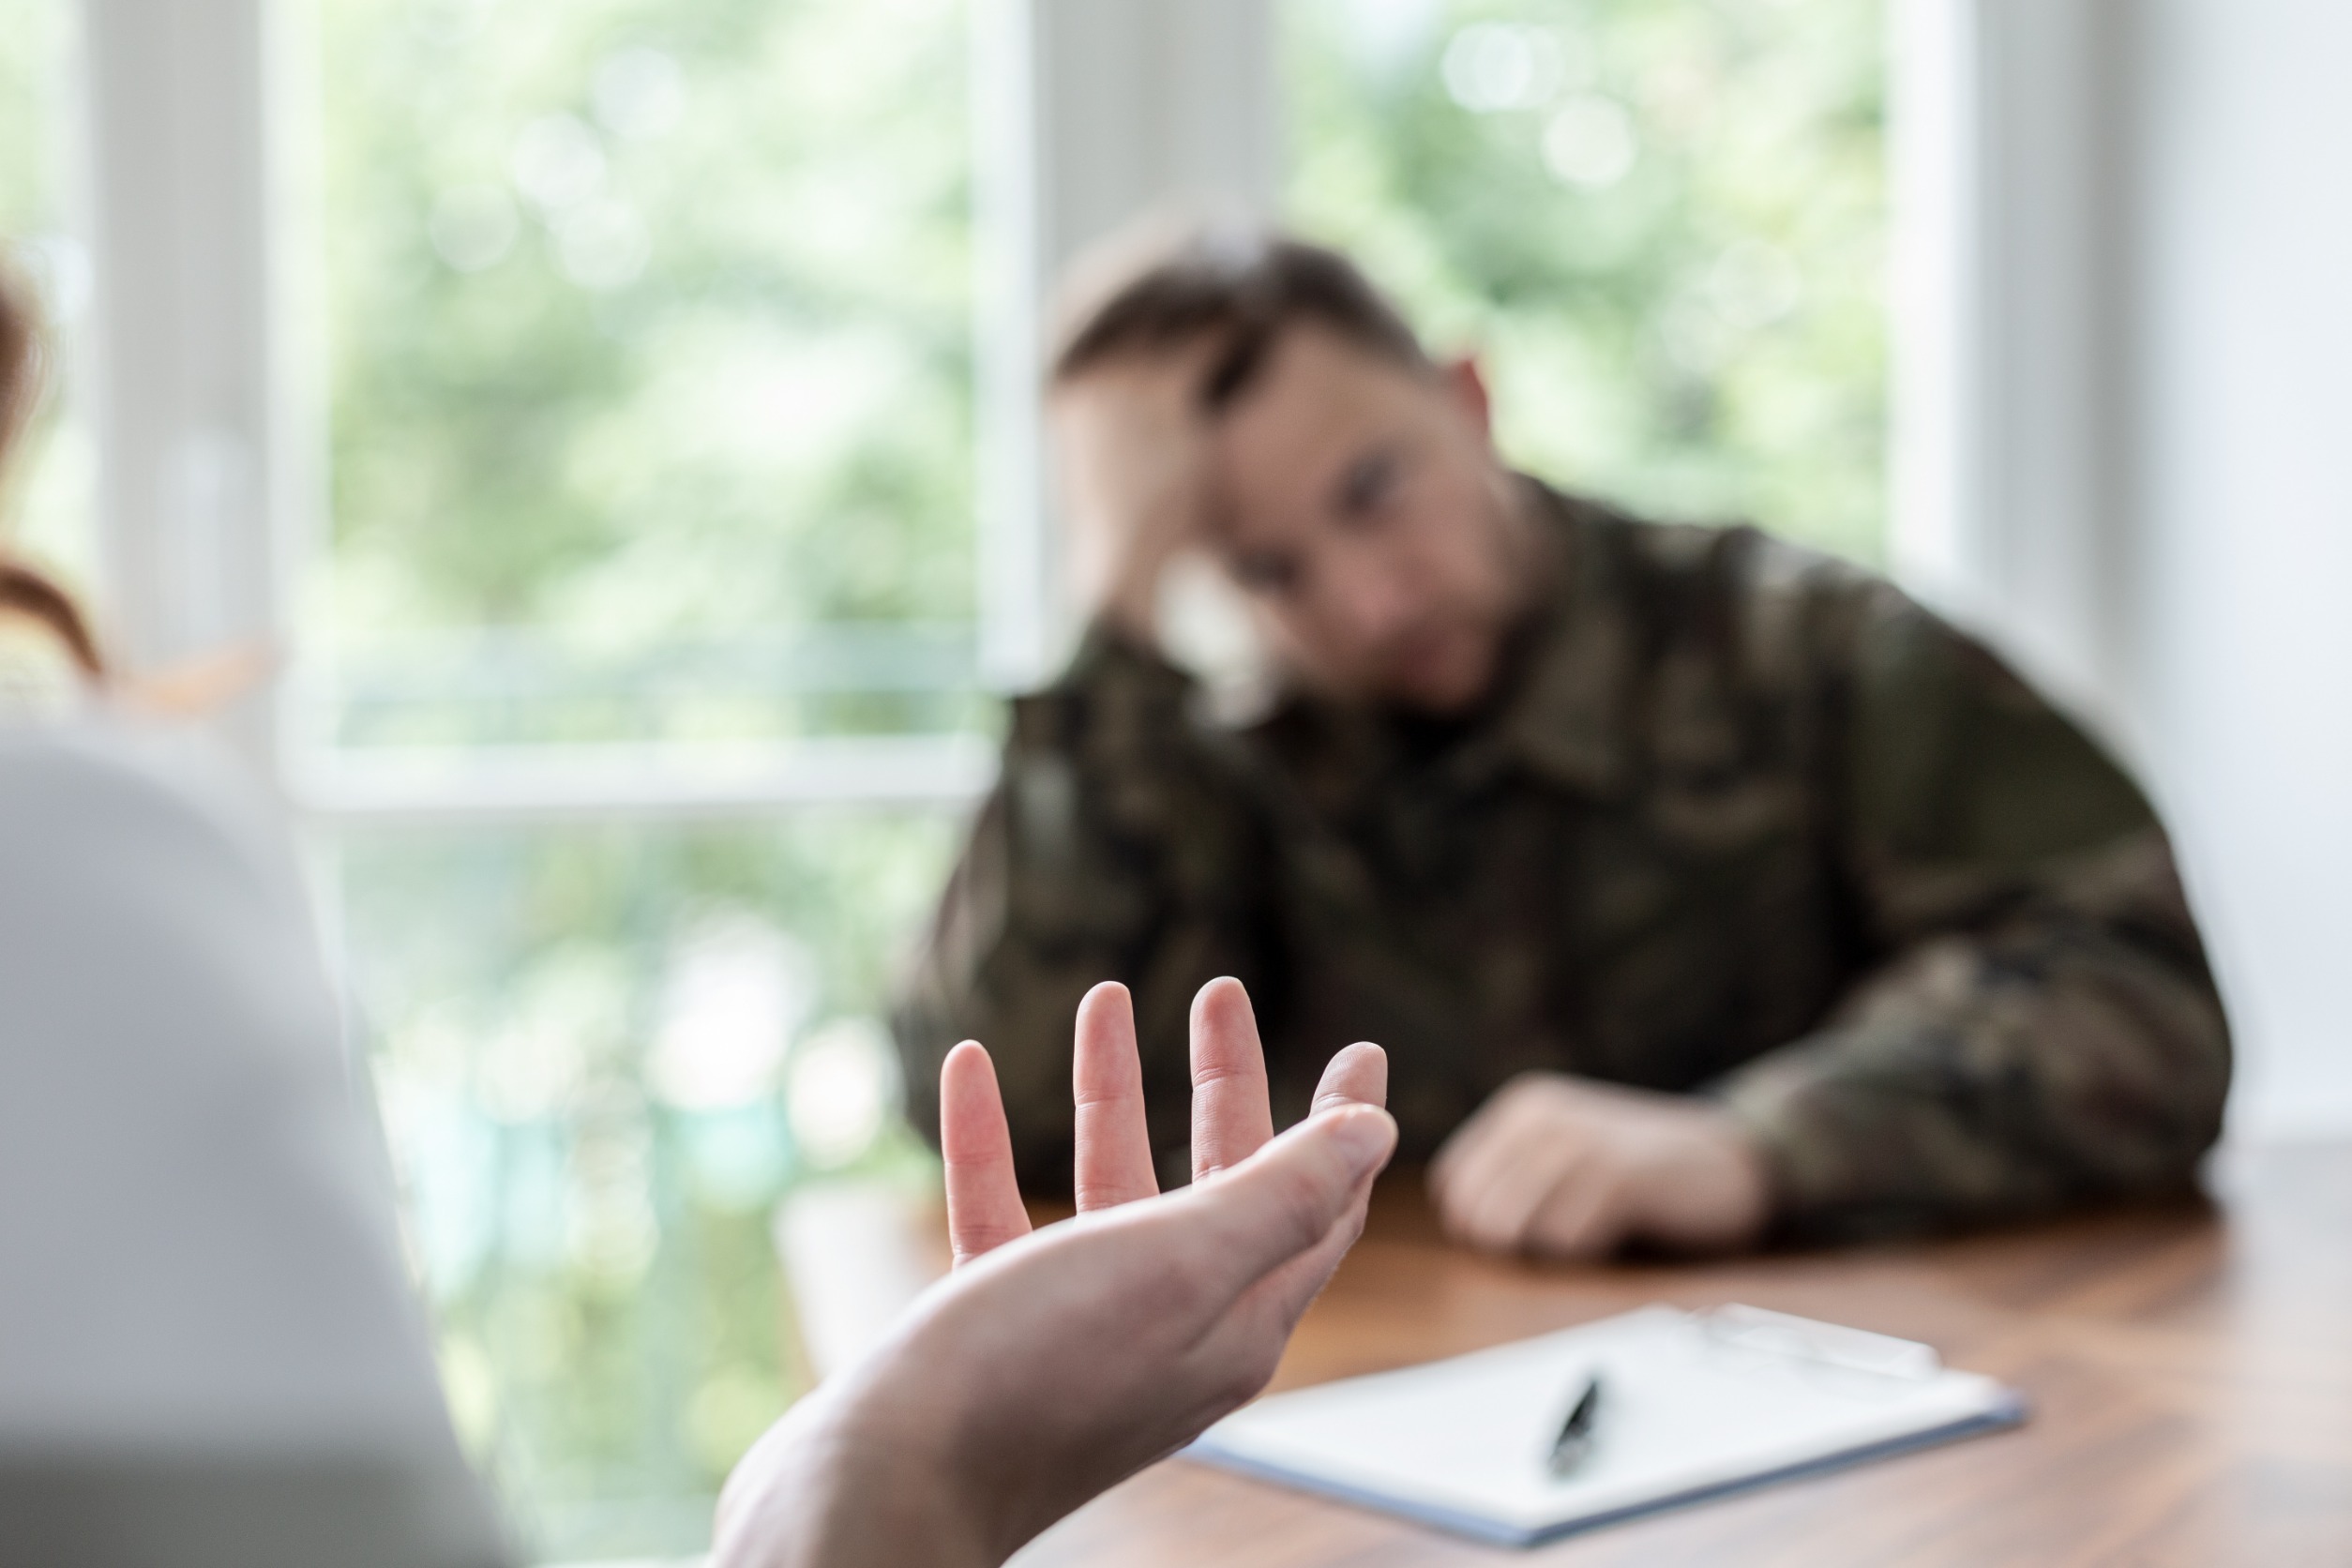 VA PTSD Ratings: What Veterans Should Know